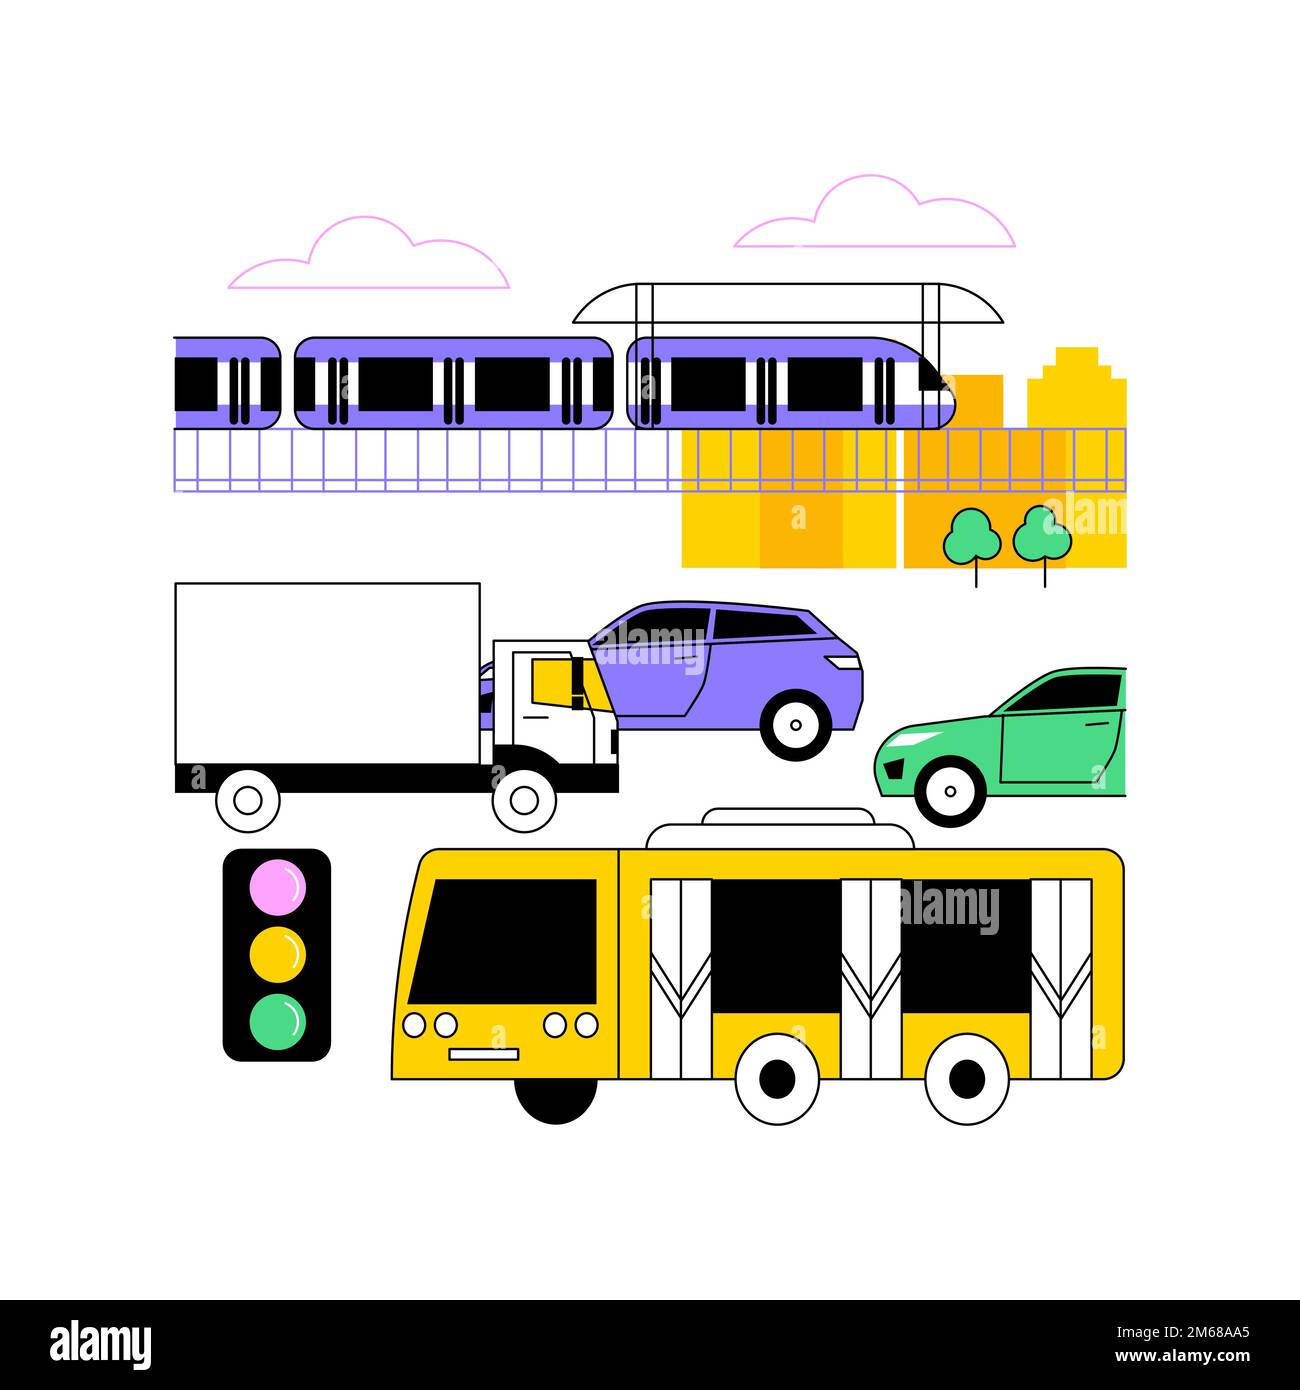 Transporte urbano concepto abstracto ilustración vectorial. Sistema de transporte público, carreteras urbanas concurridas, tráfico de automóviles, plataforma de la estación de metro, parada de autobús, pe Ilustración del Vector